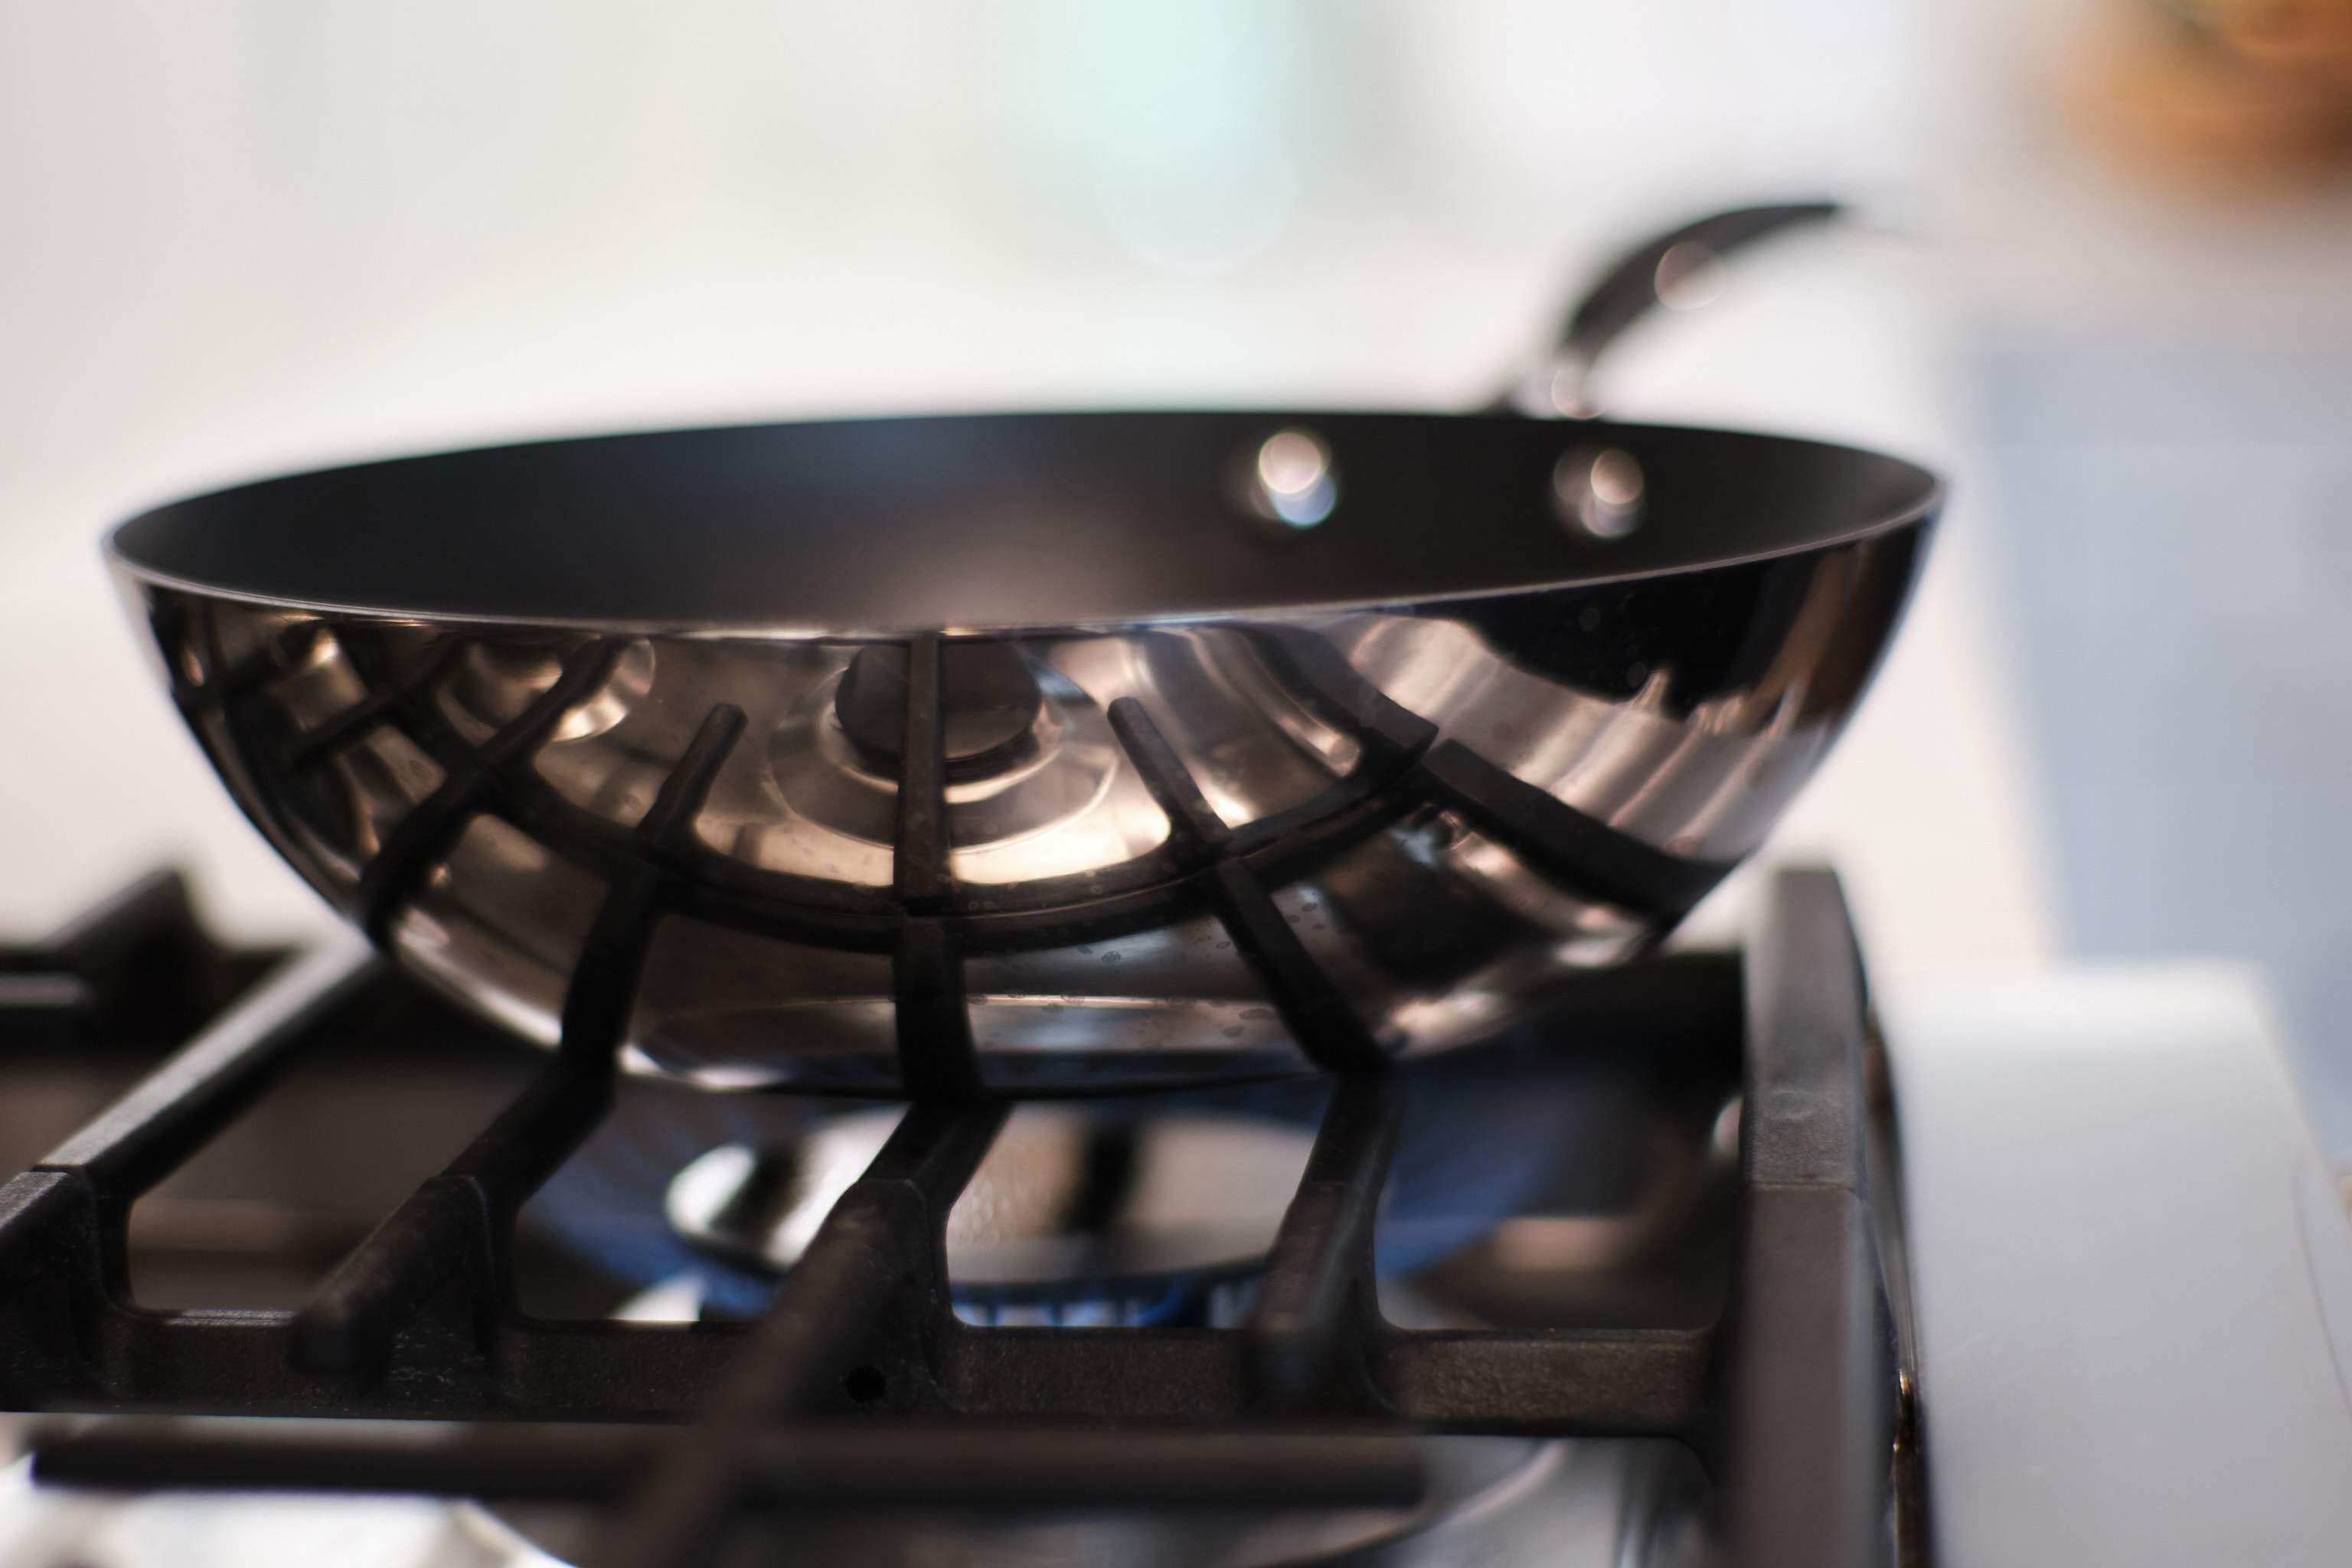 Ferrum Carbon Steel Saucepans - 2 Piece Set – Lacor Home